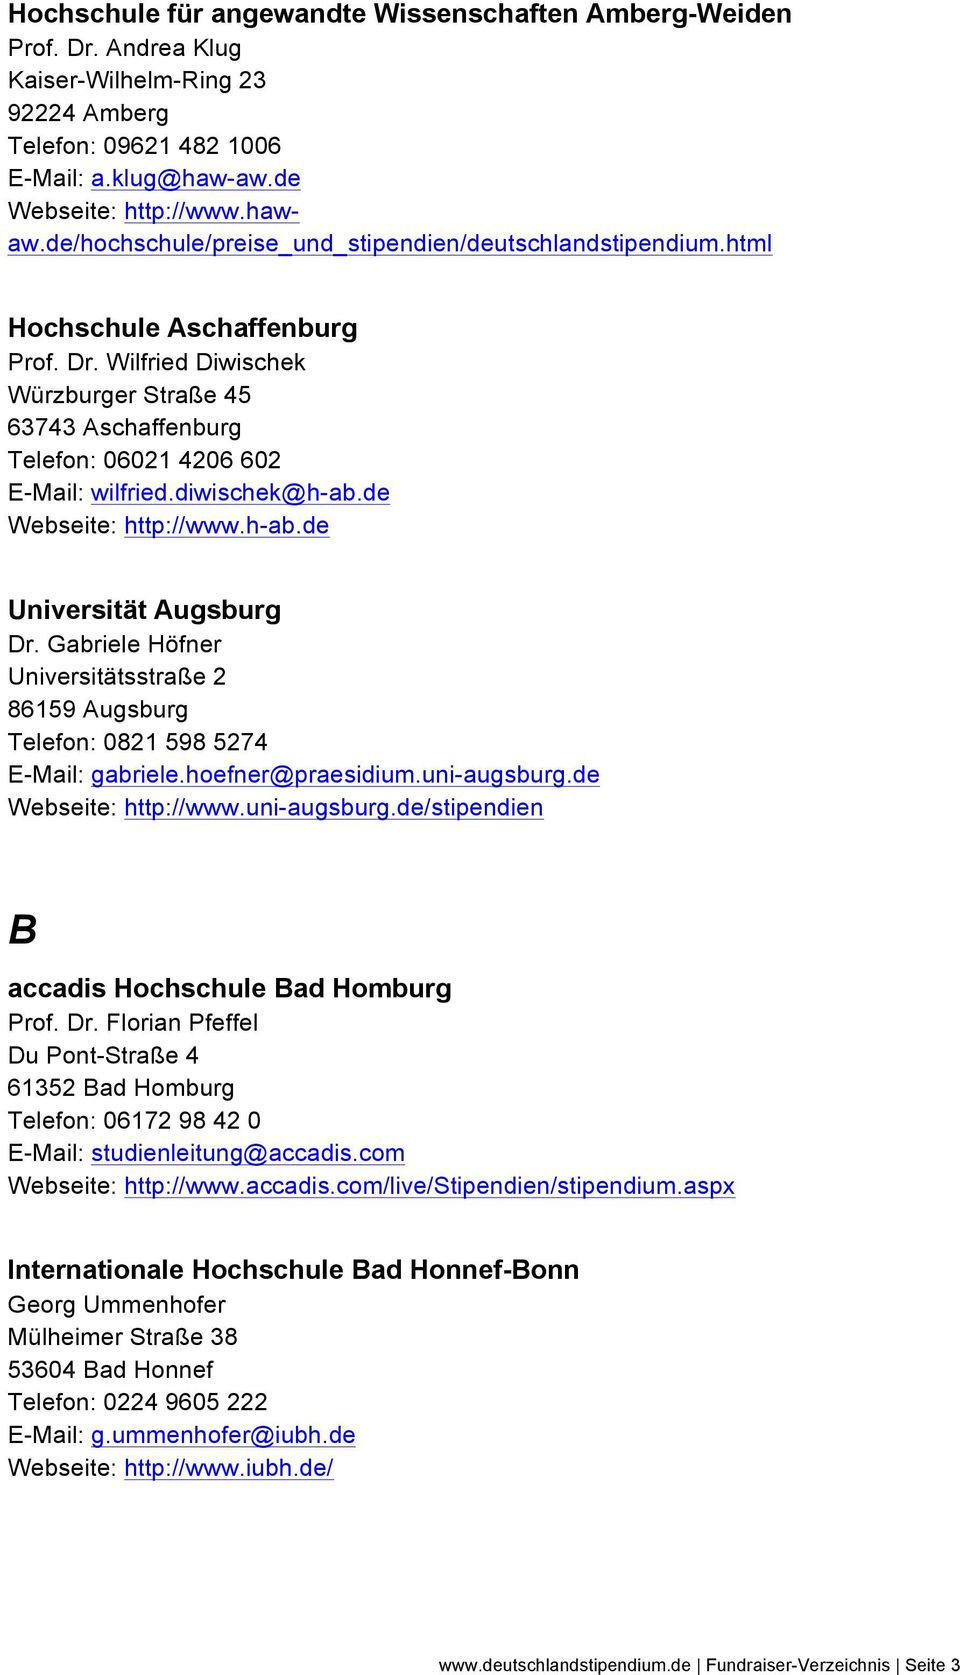 diwischek@h-ab.de Webseite: http://www.h-ab.de Universität Augsburg Dr. Gabriele Höfner Universitätsstraße 2 86159 Augsburg Telefon: 0821 598 5274 E-Mail: gabriele.hoefner@praesidium.uni-augsburg.